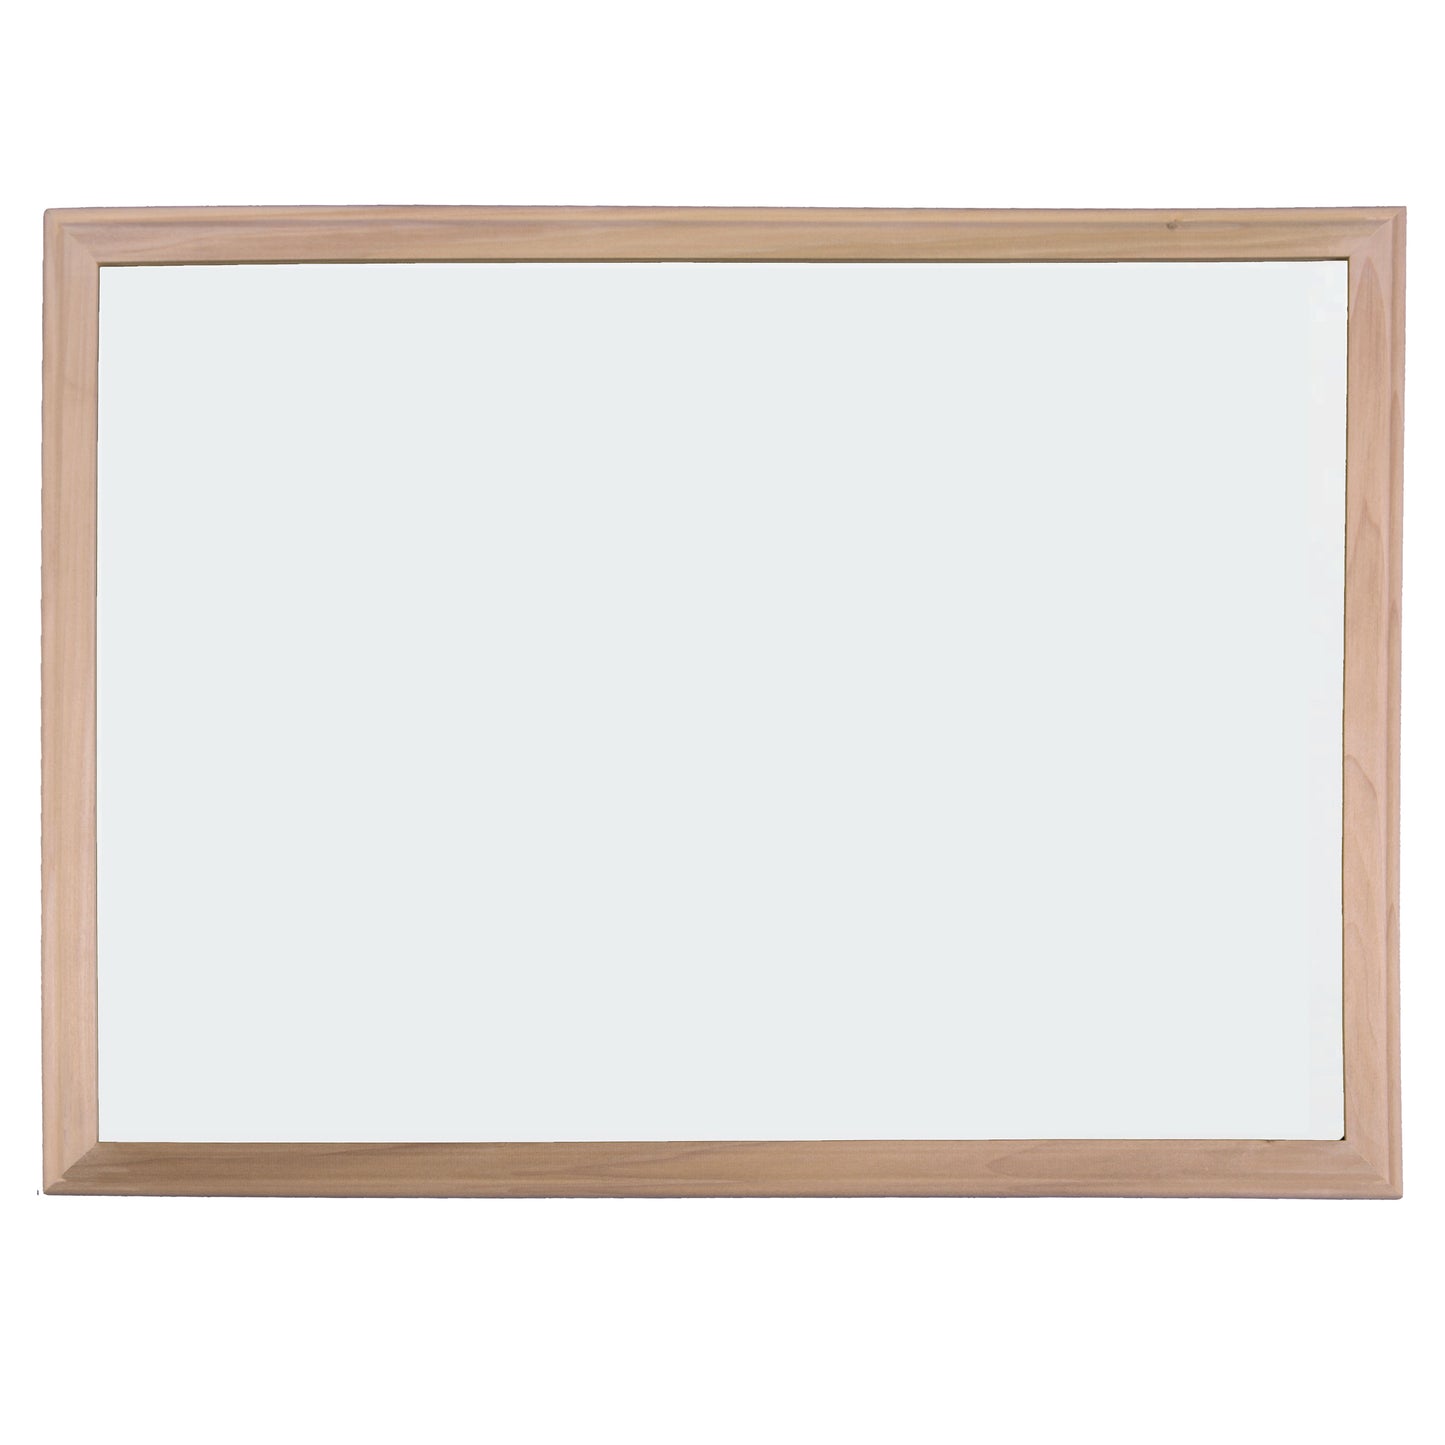 Wood Framed Magnetic Dry Erase Board, 24" x 36"